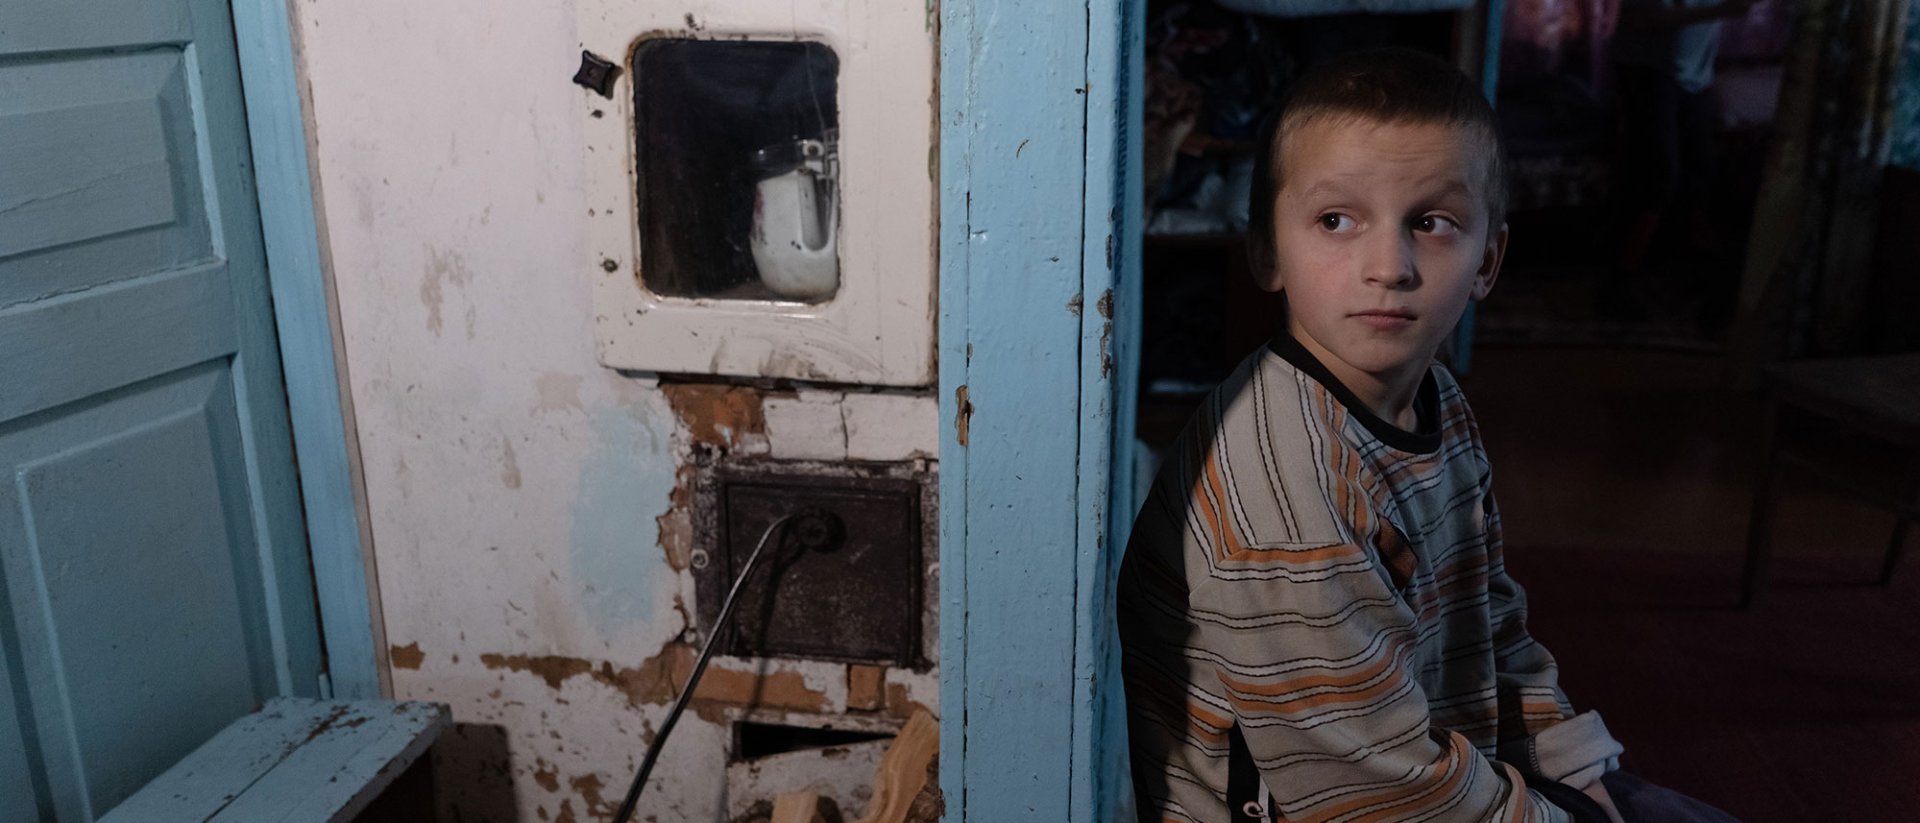 2 años de guerra en Ucrania - Niño solo en una habitación